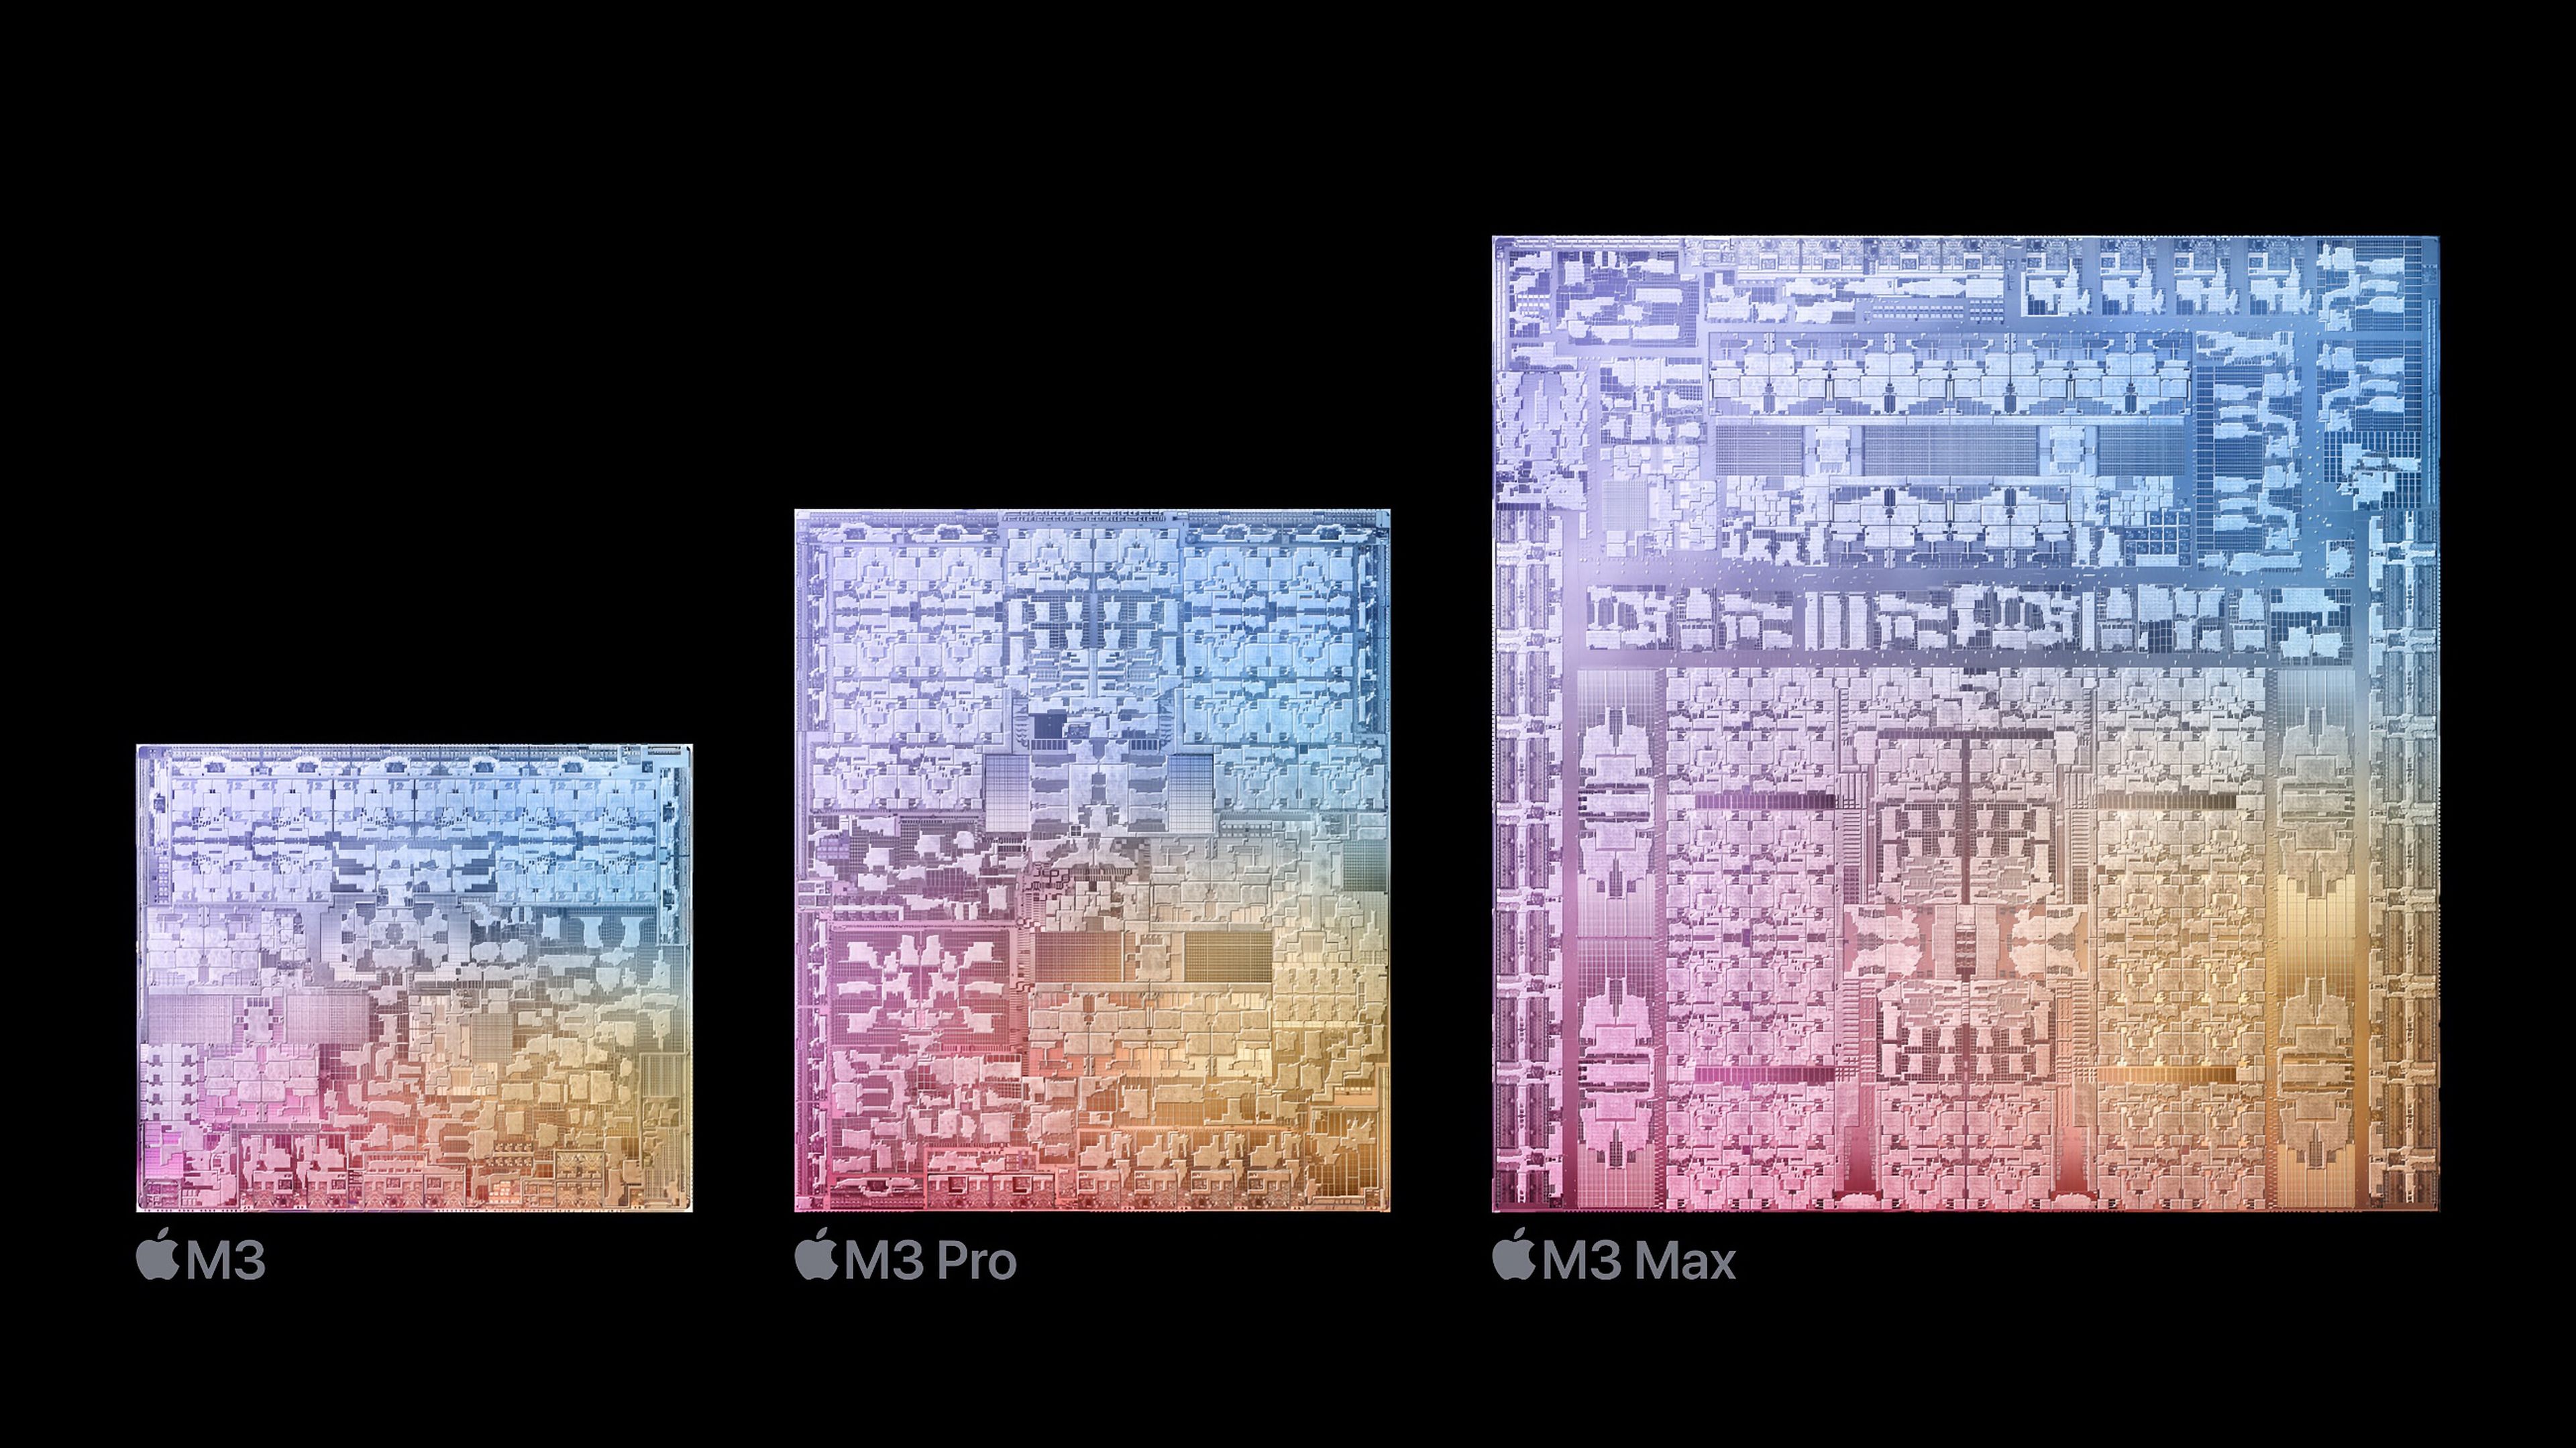 Diferencias en tamaño de los chips M3, M3 Pro y M3 Max